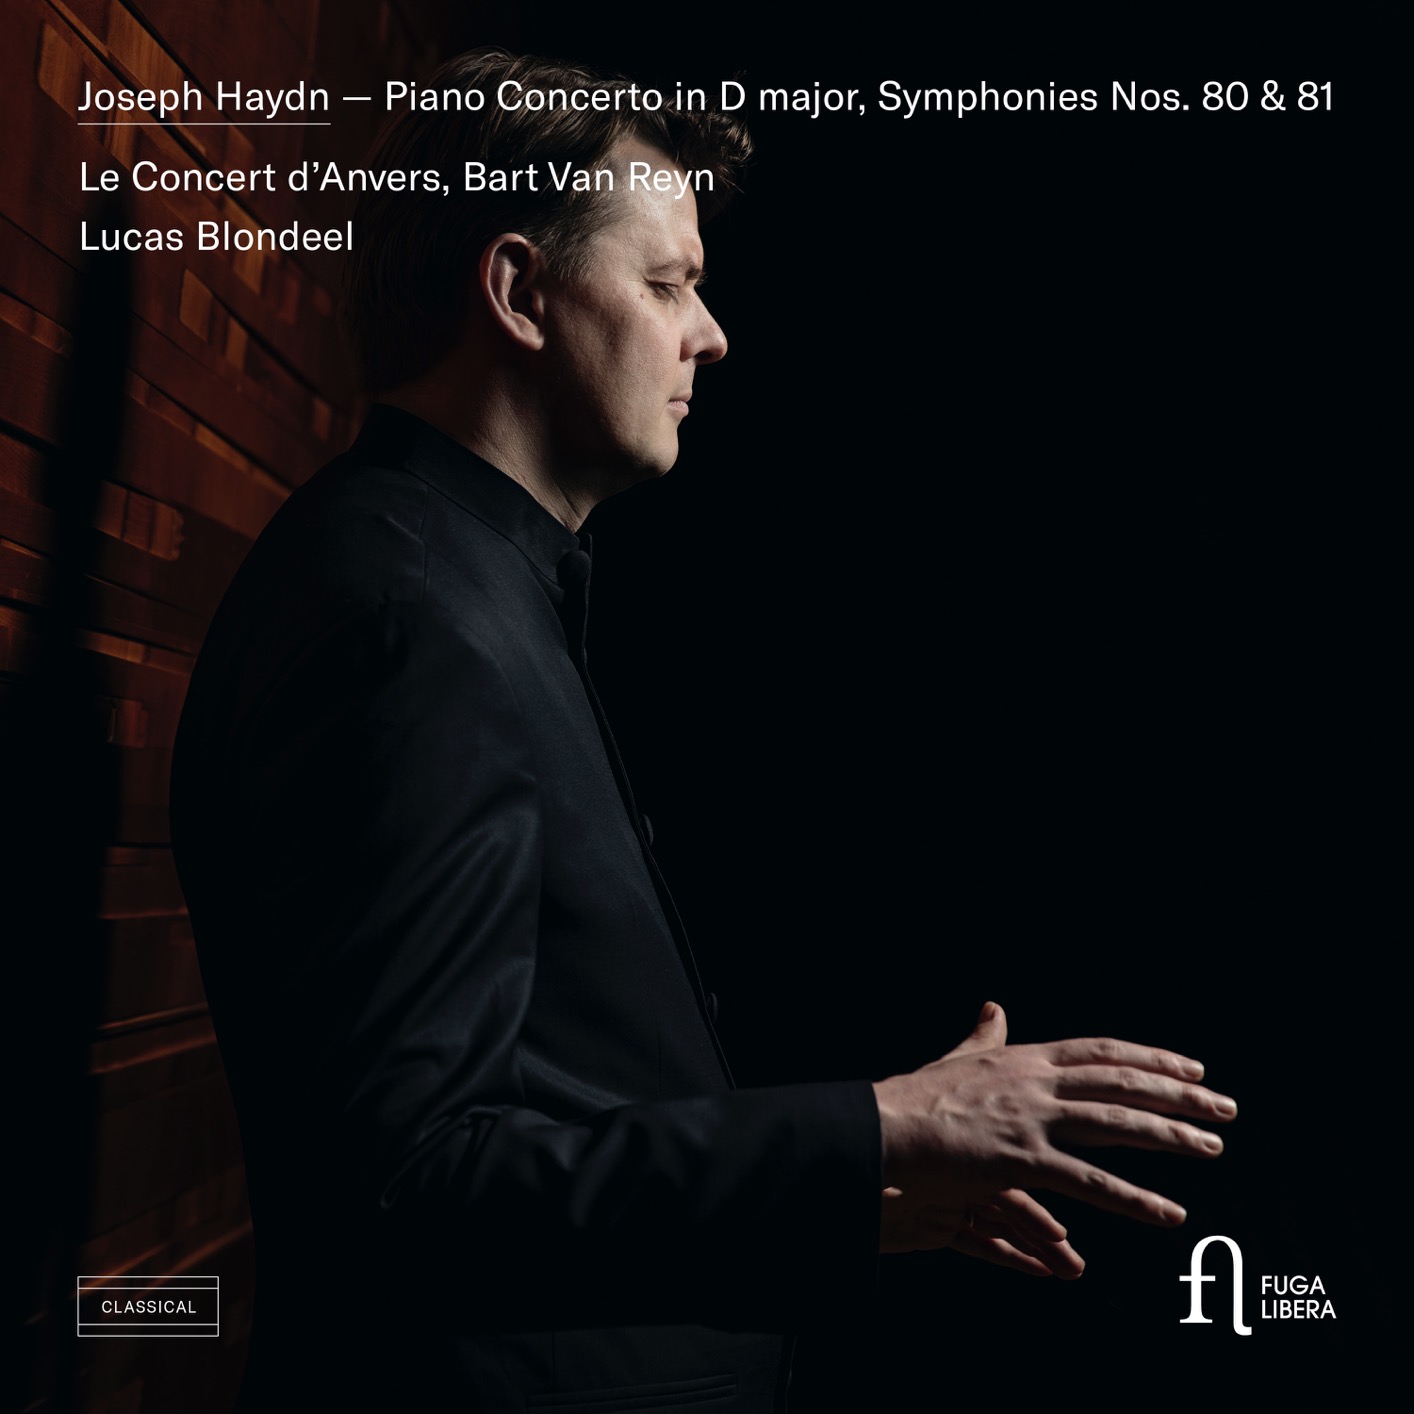 Bart Van Reyn, Lucas Blondeel & Le Concert d’Anvers – Haydn: Piano Concerto in D major, Symphonies Nos. 80 & 81 (2019) [FLAC 24bit/96kHz]